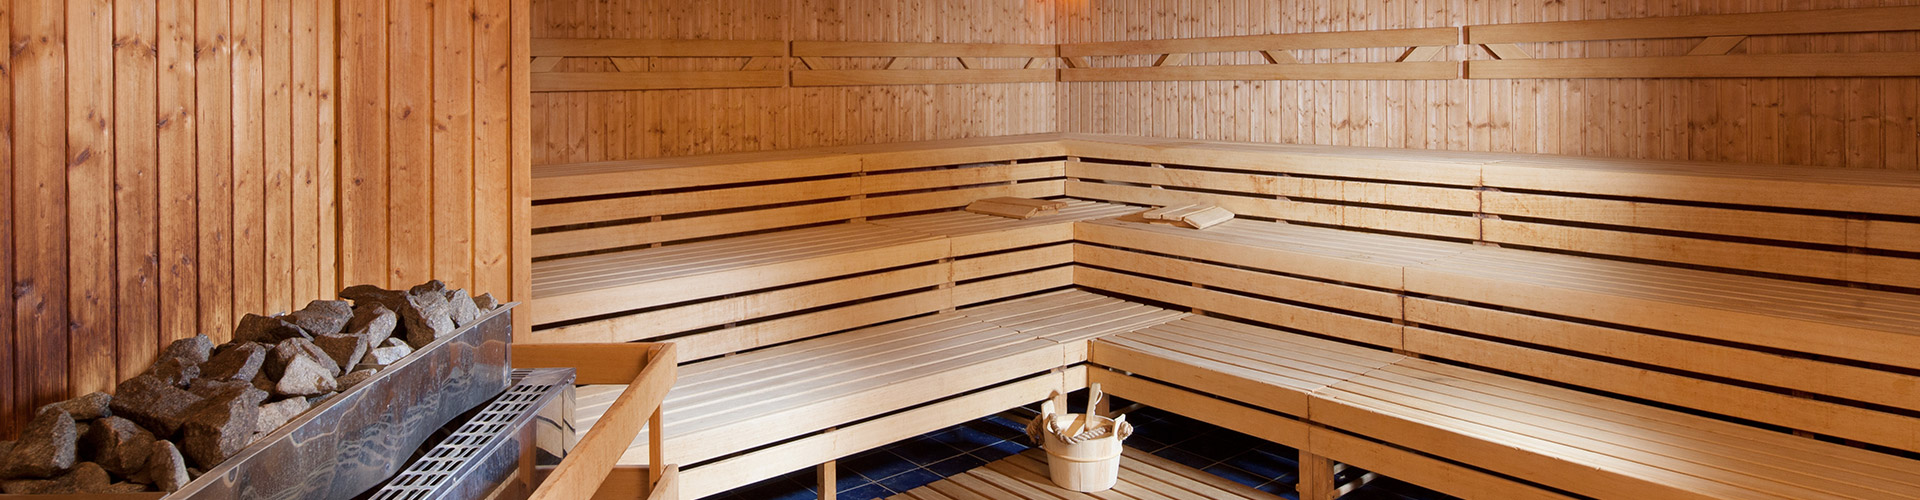 Wellness Frymburk - sauna